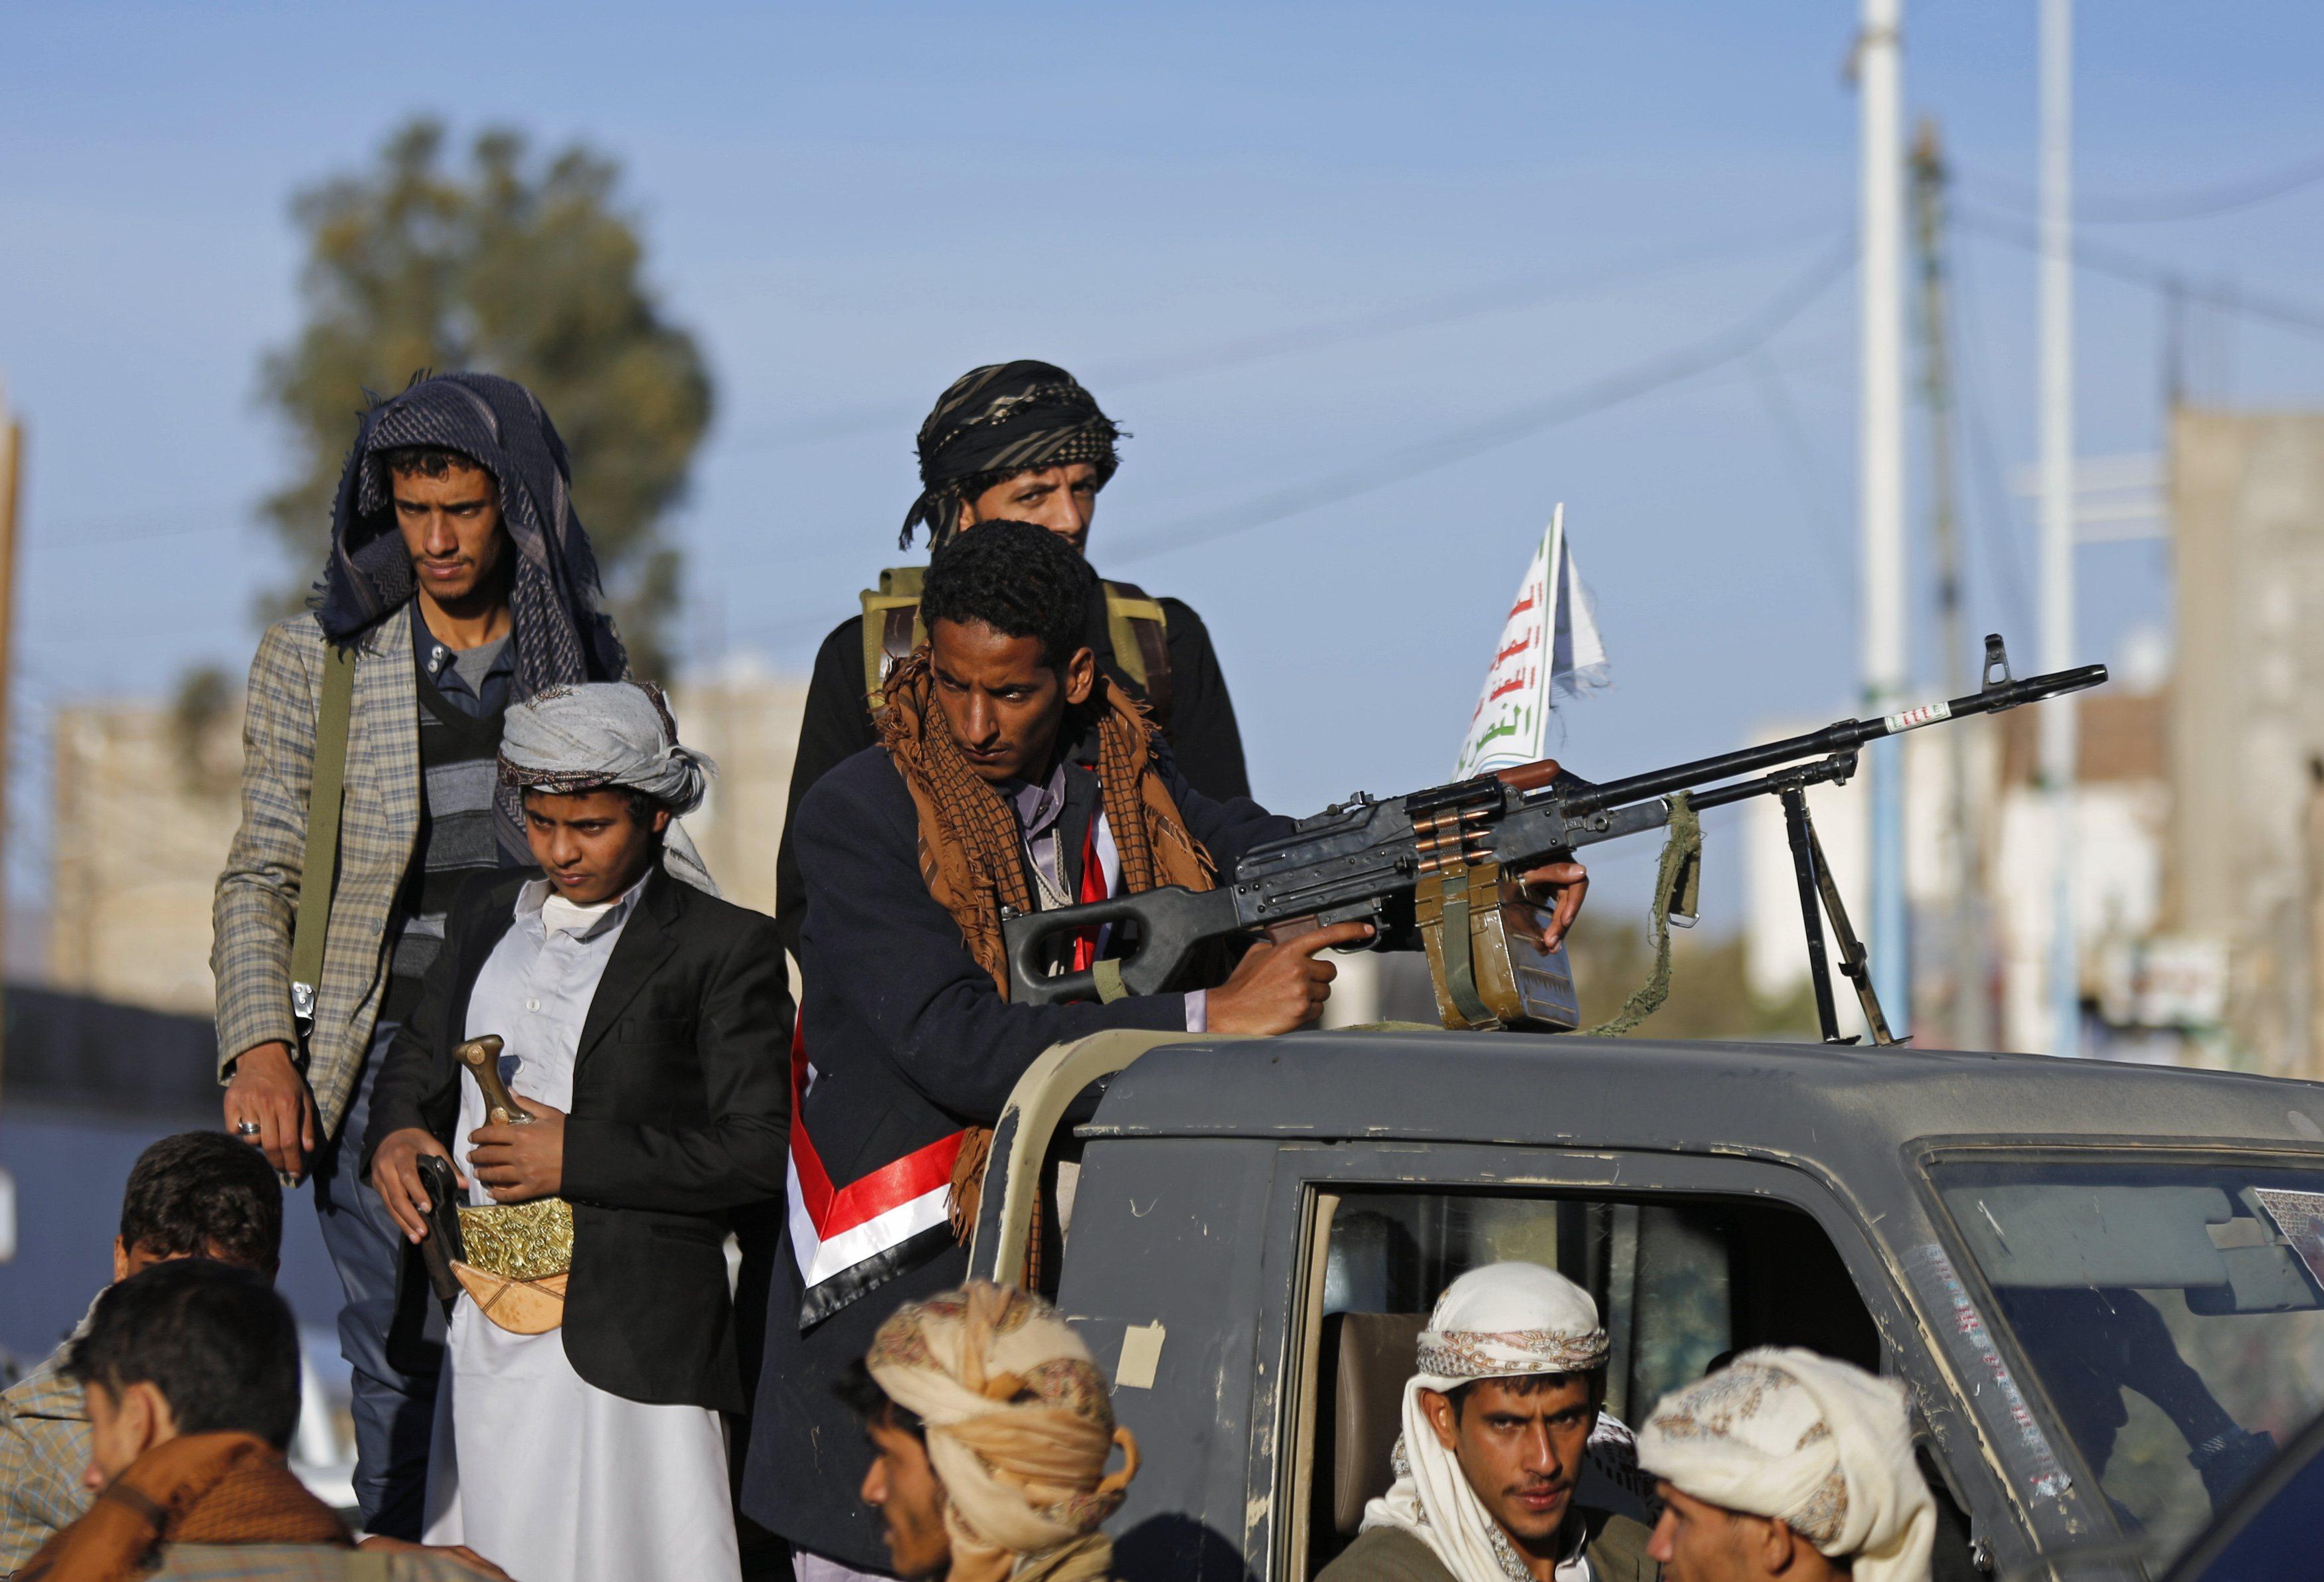   اليمن: الحوثيون يغلقون وكالات الحج والعمرة بصنعاء